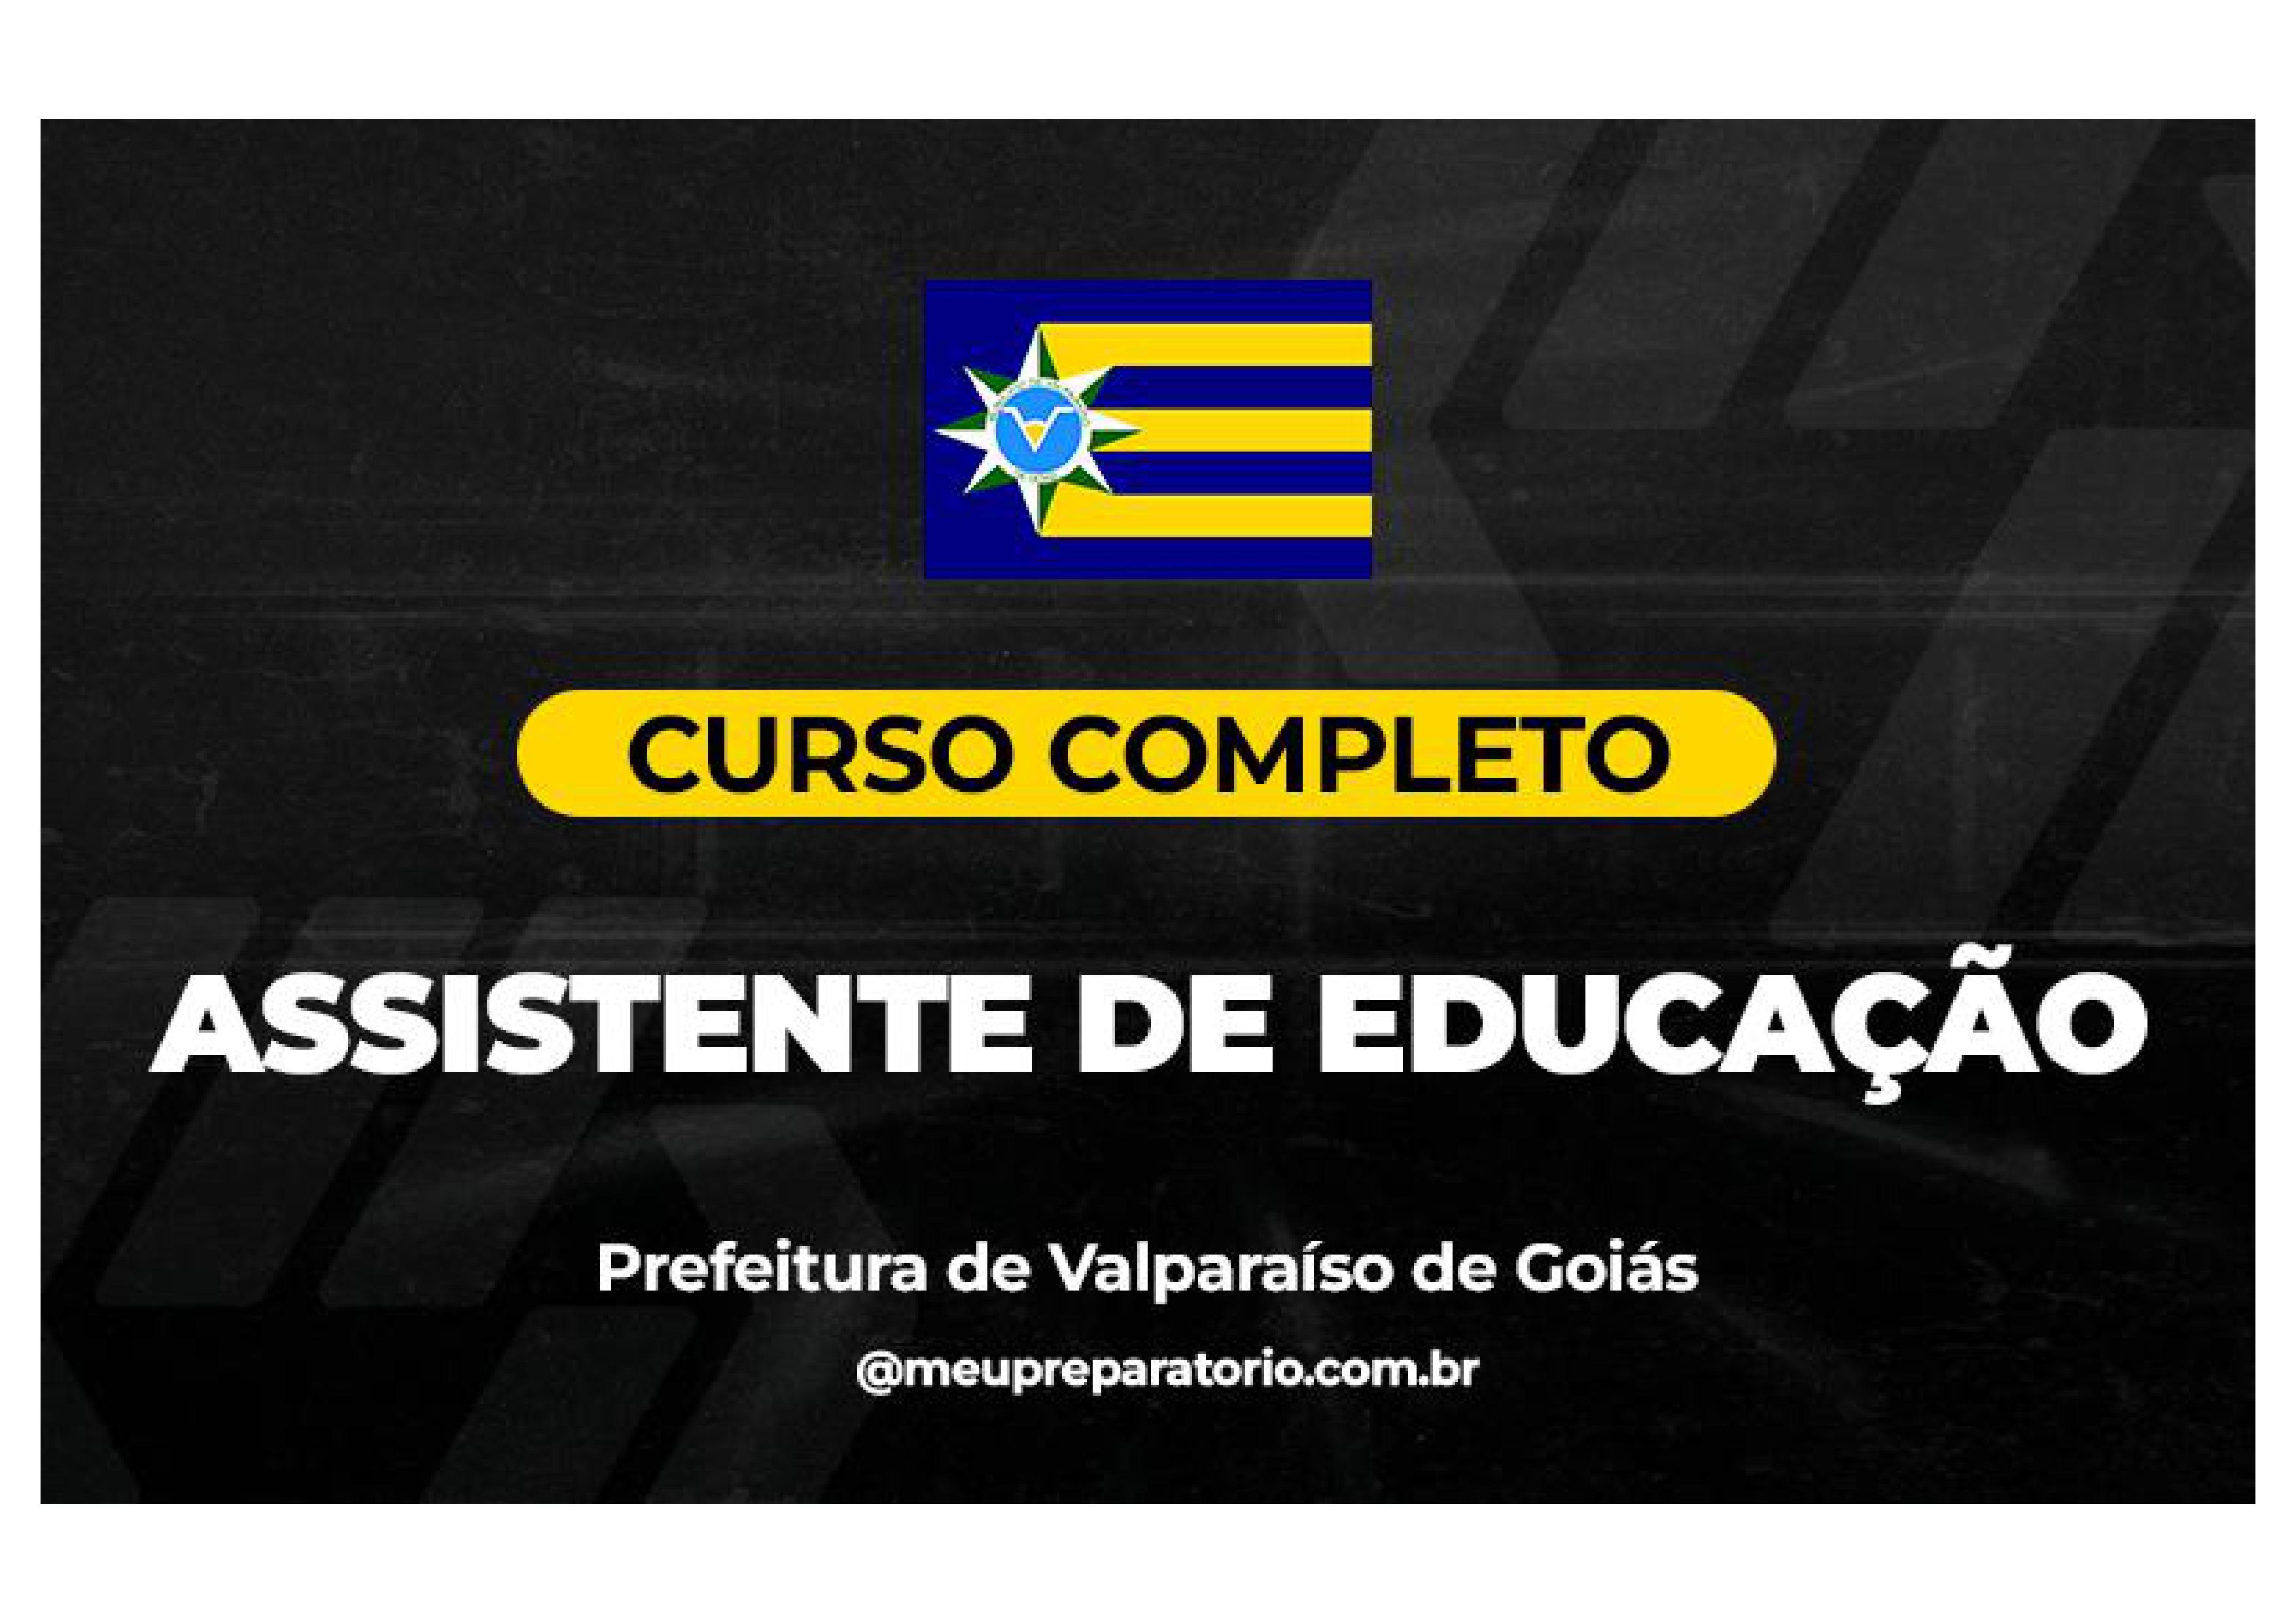 Assistente de Educação - Valparaíso (GO)